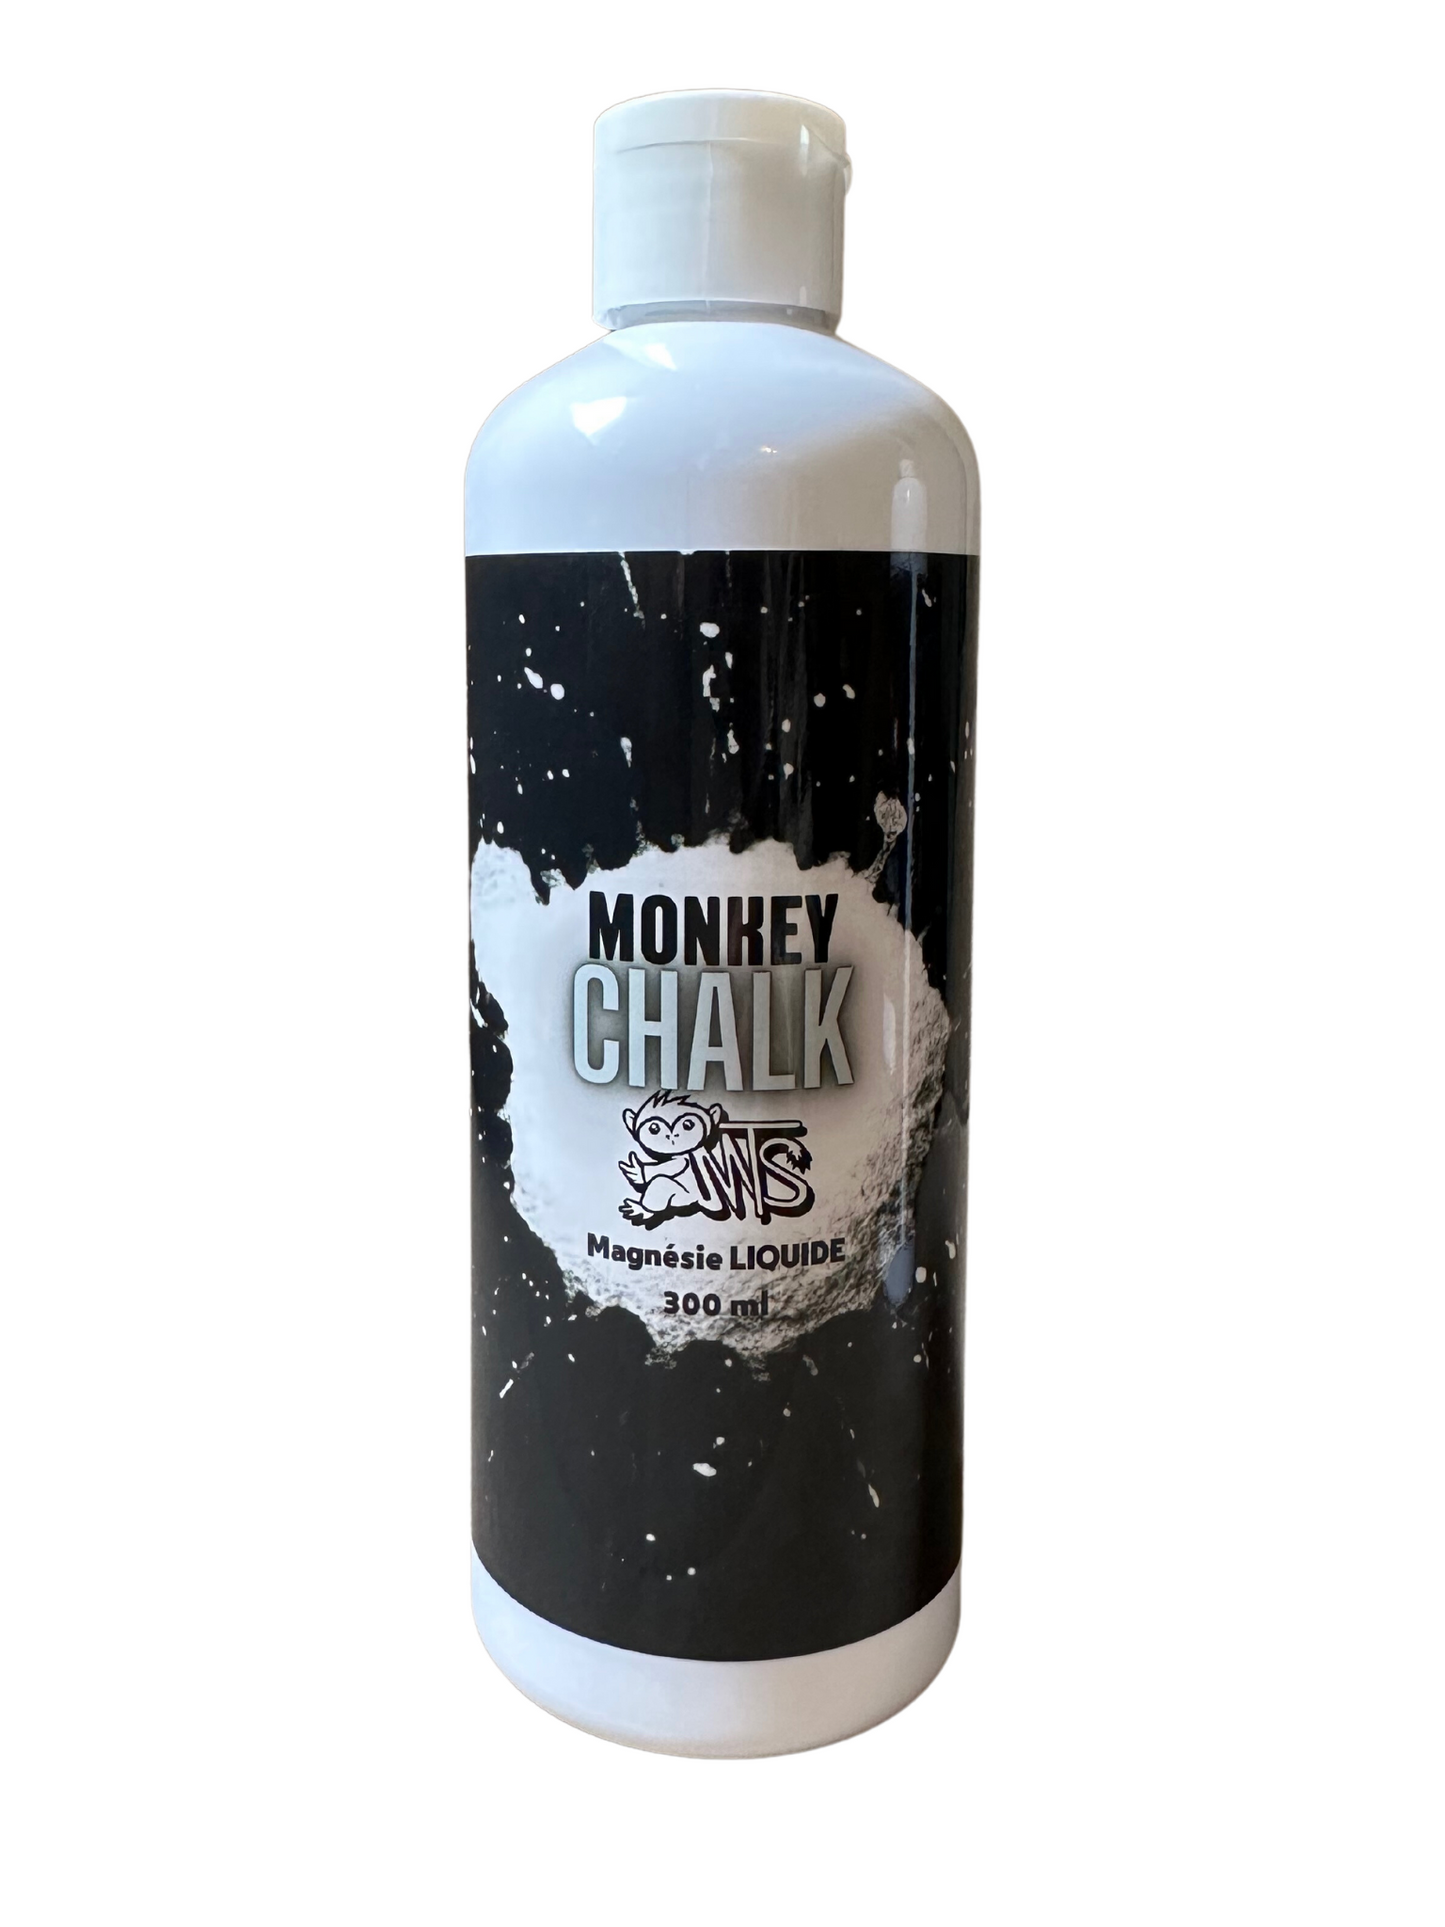 Monkey Chalk magnésie en poudre concassée